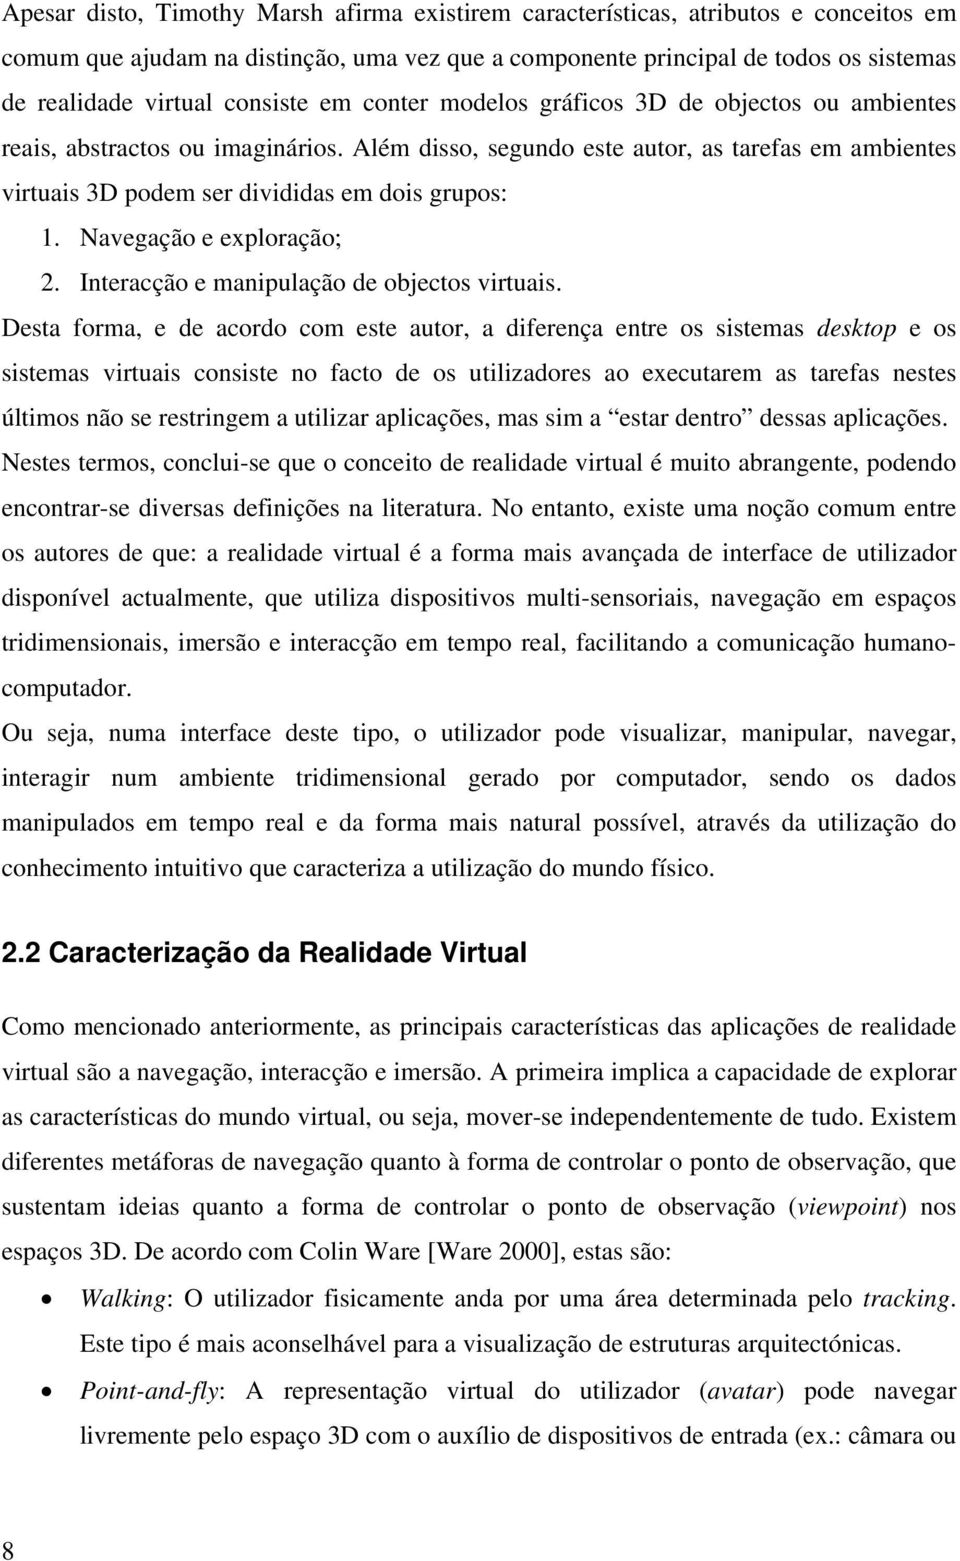 Além disso, segundo este autor, as tarefas em ambientes virtuais 3D podem ser divididas em dois grupos: 1. Navegação e exploração; 2. Interacção e manipulação de objectos virtuais.